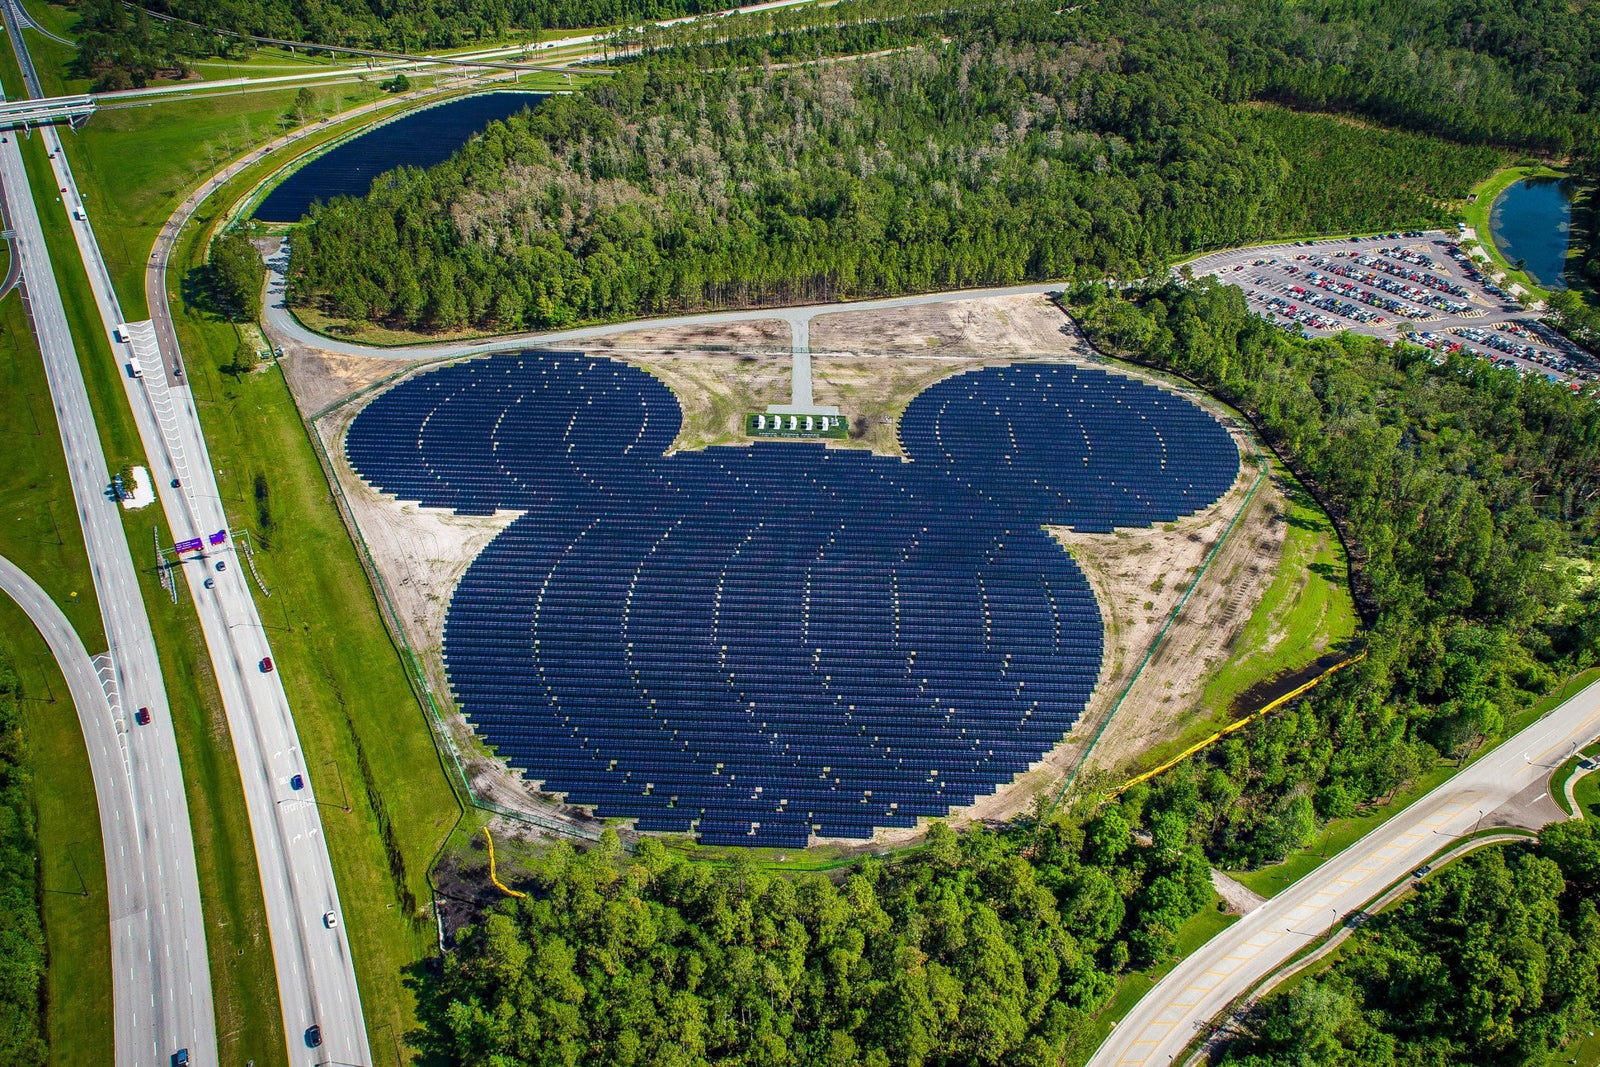 Mickey-shaped solar panels